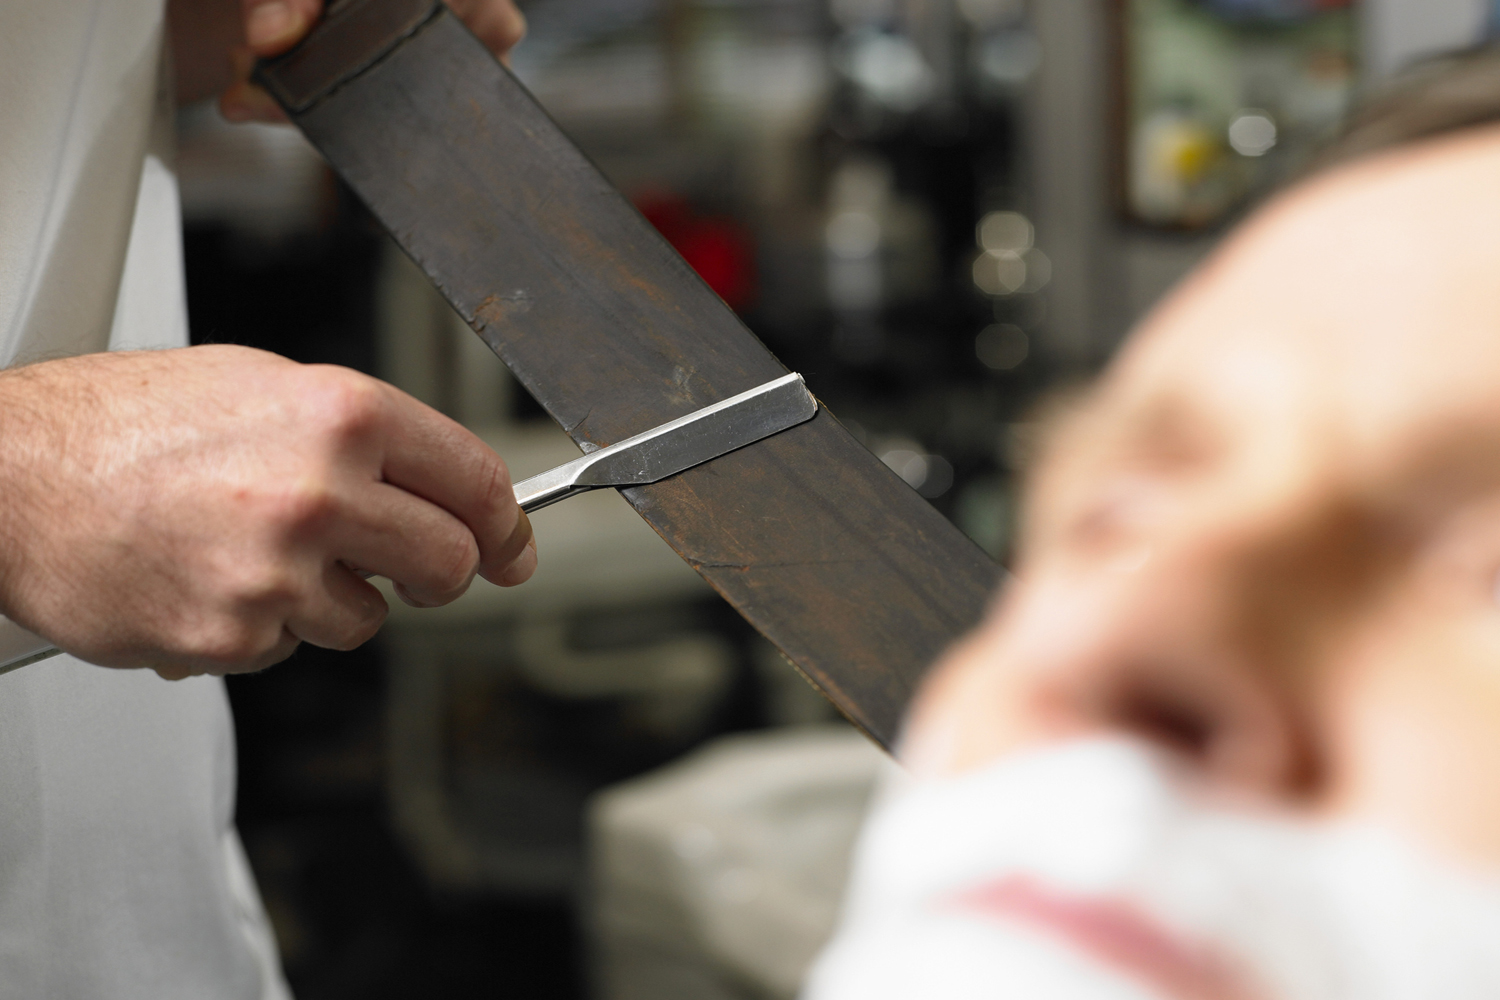 Operation of razor blade sharpeners 